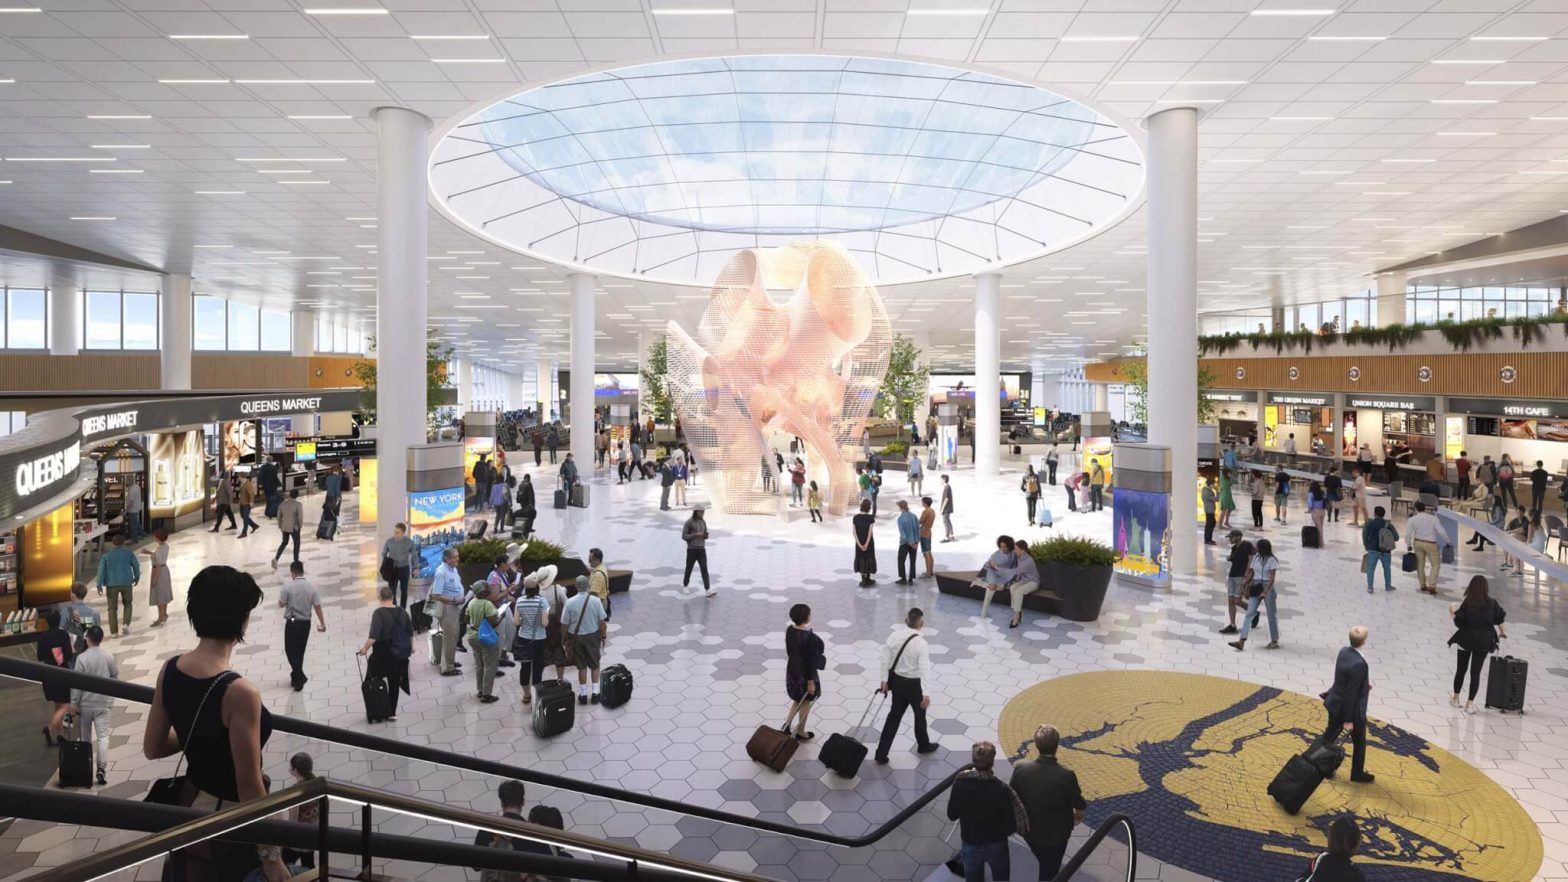 فرودگاه JFK 18 کمیسیون هنری عمومی را در ترمینال 6 افتتاح می کند که در سال 2026 افتتاح می شود.